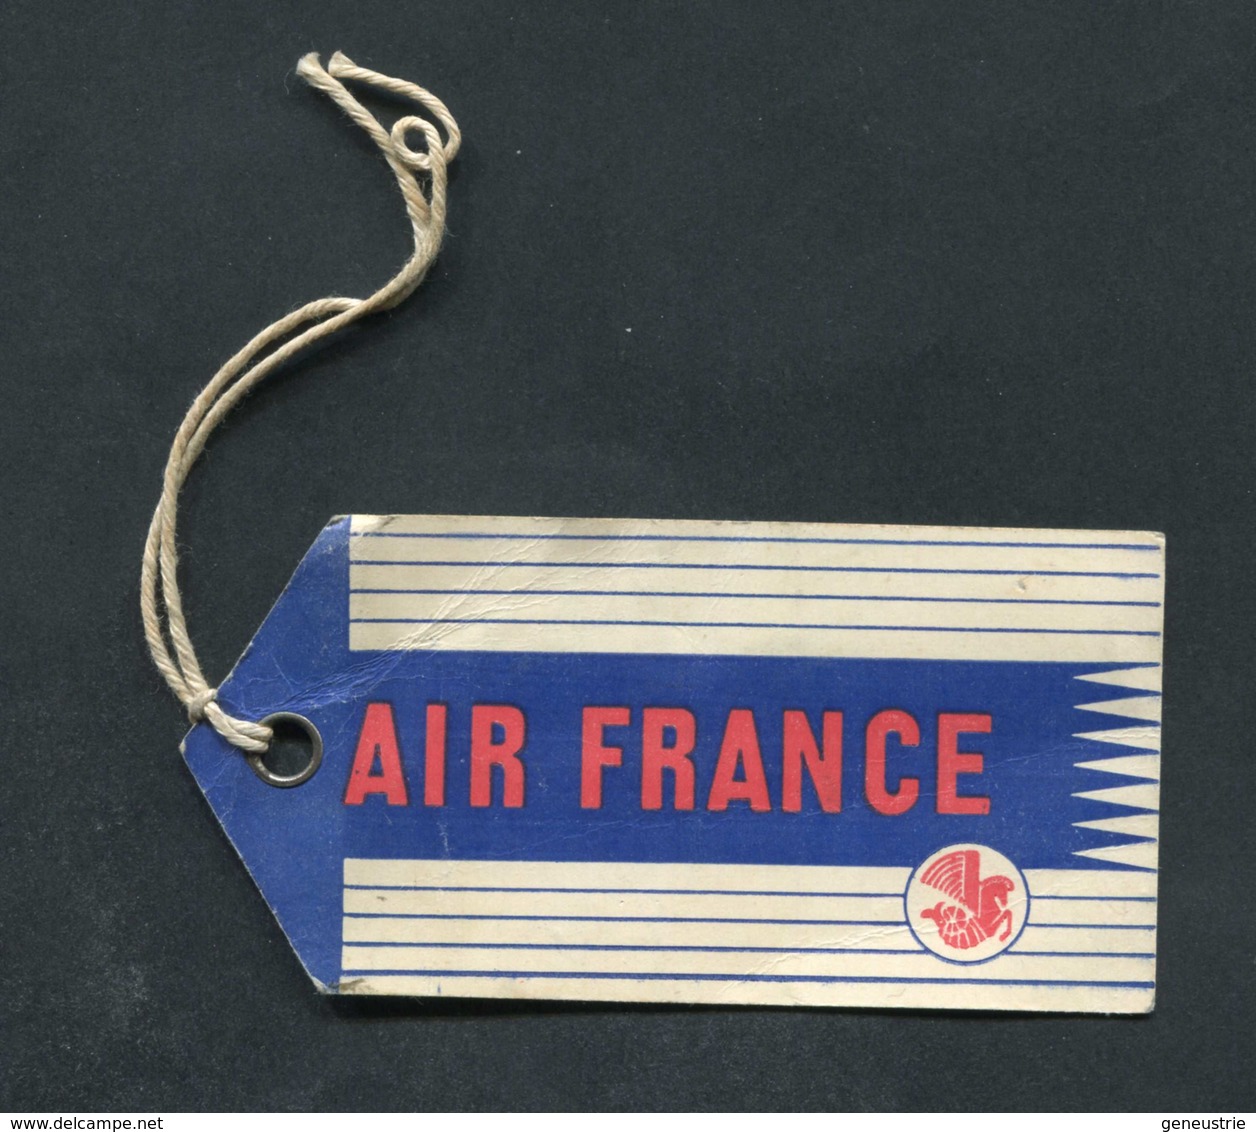 Etiquette D'identification De Bagages 1959 "Air France" Aviation Commercial - Avion - Baggage Labels & Tags